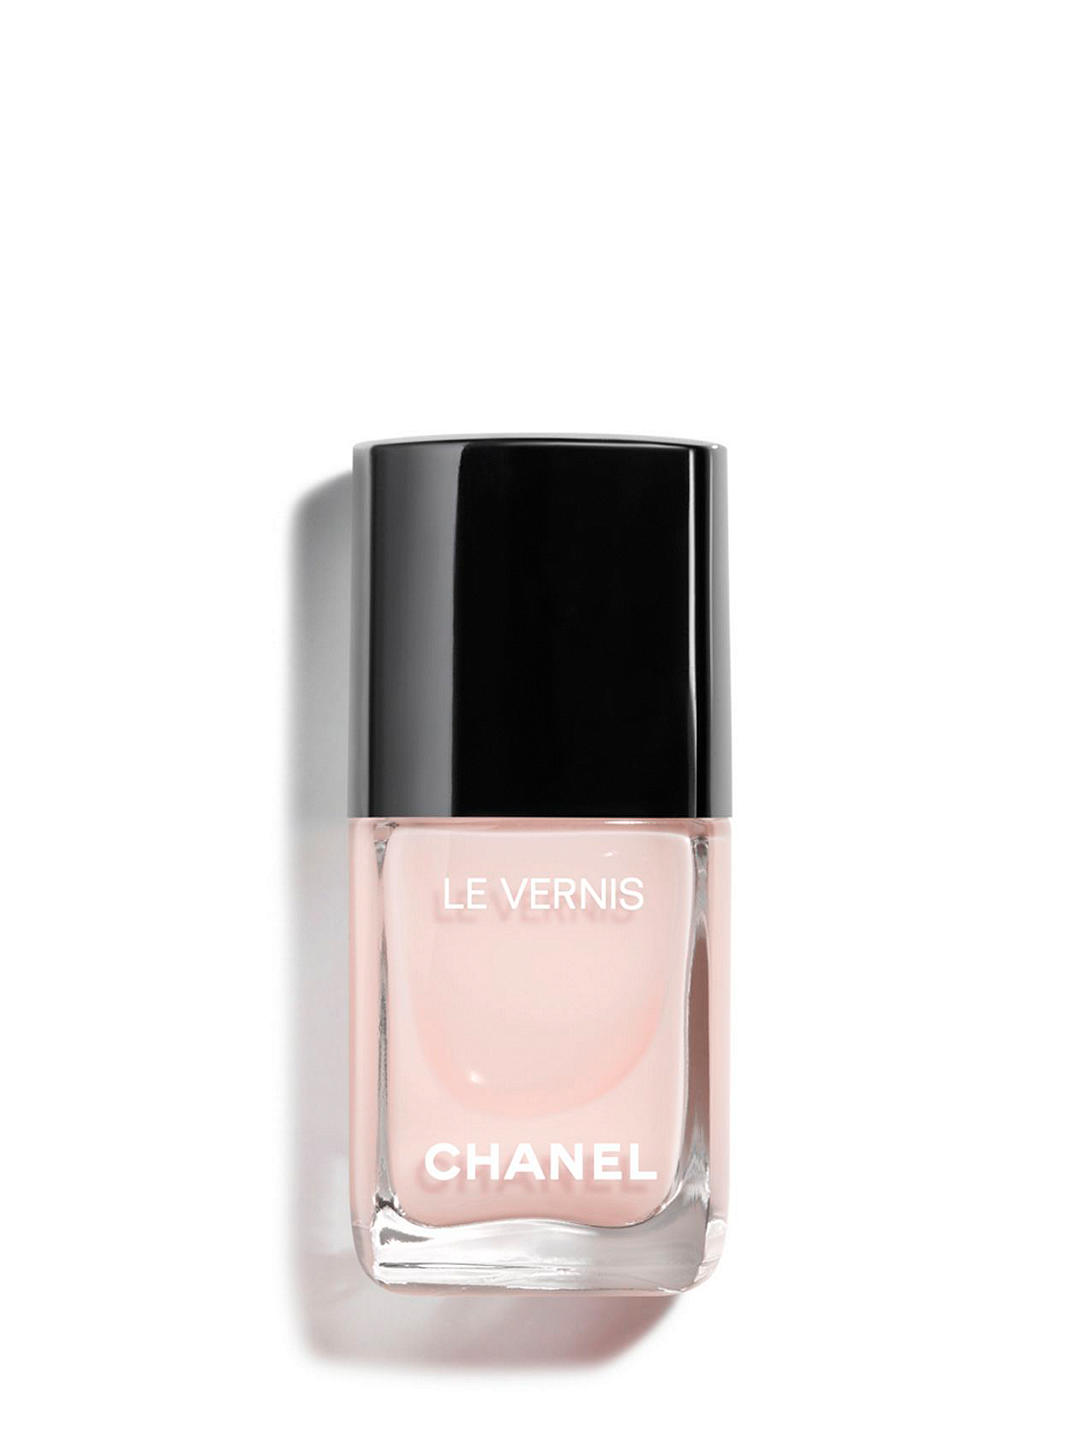 Chanel, Le Vernis Nail Colour, 111 Ballerina